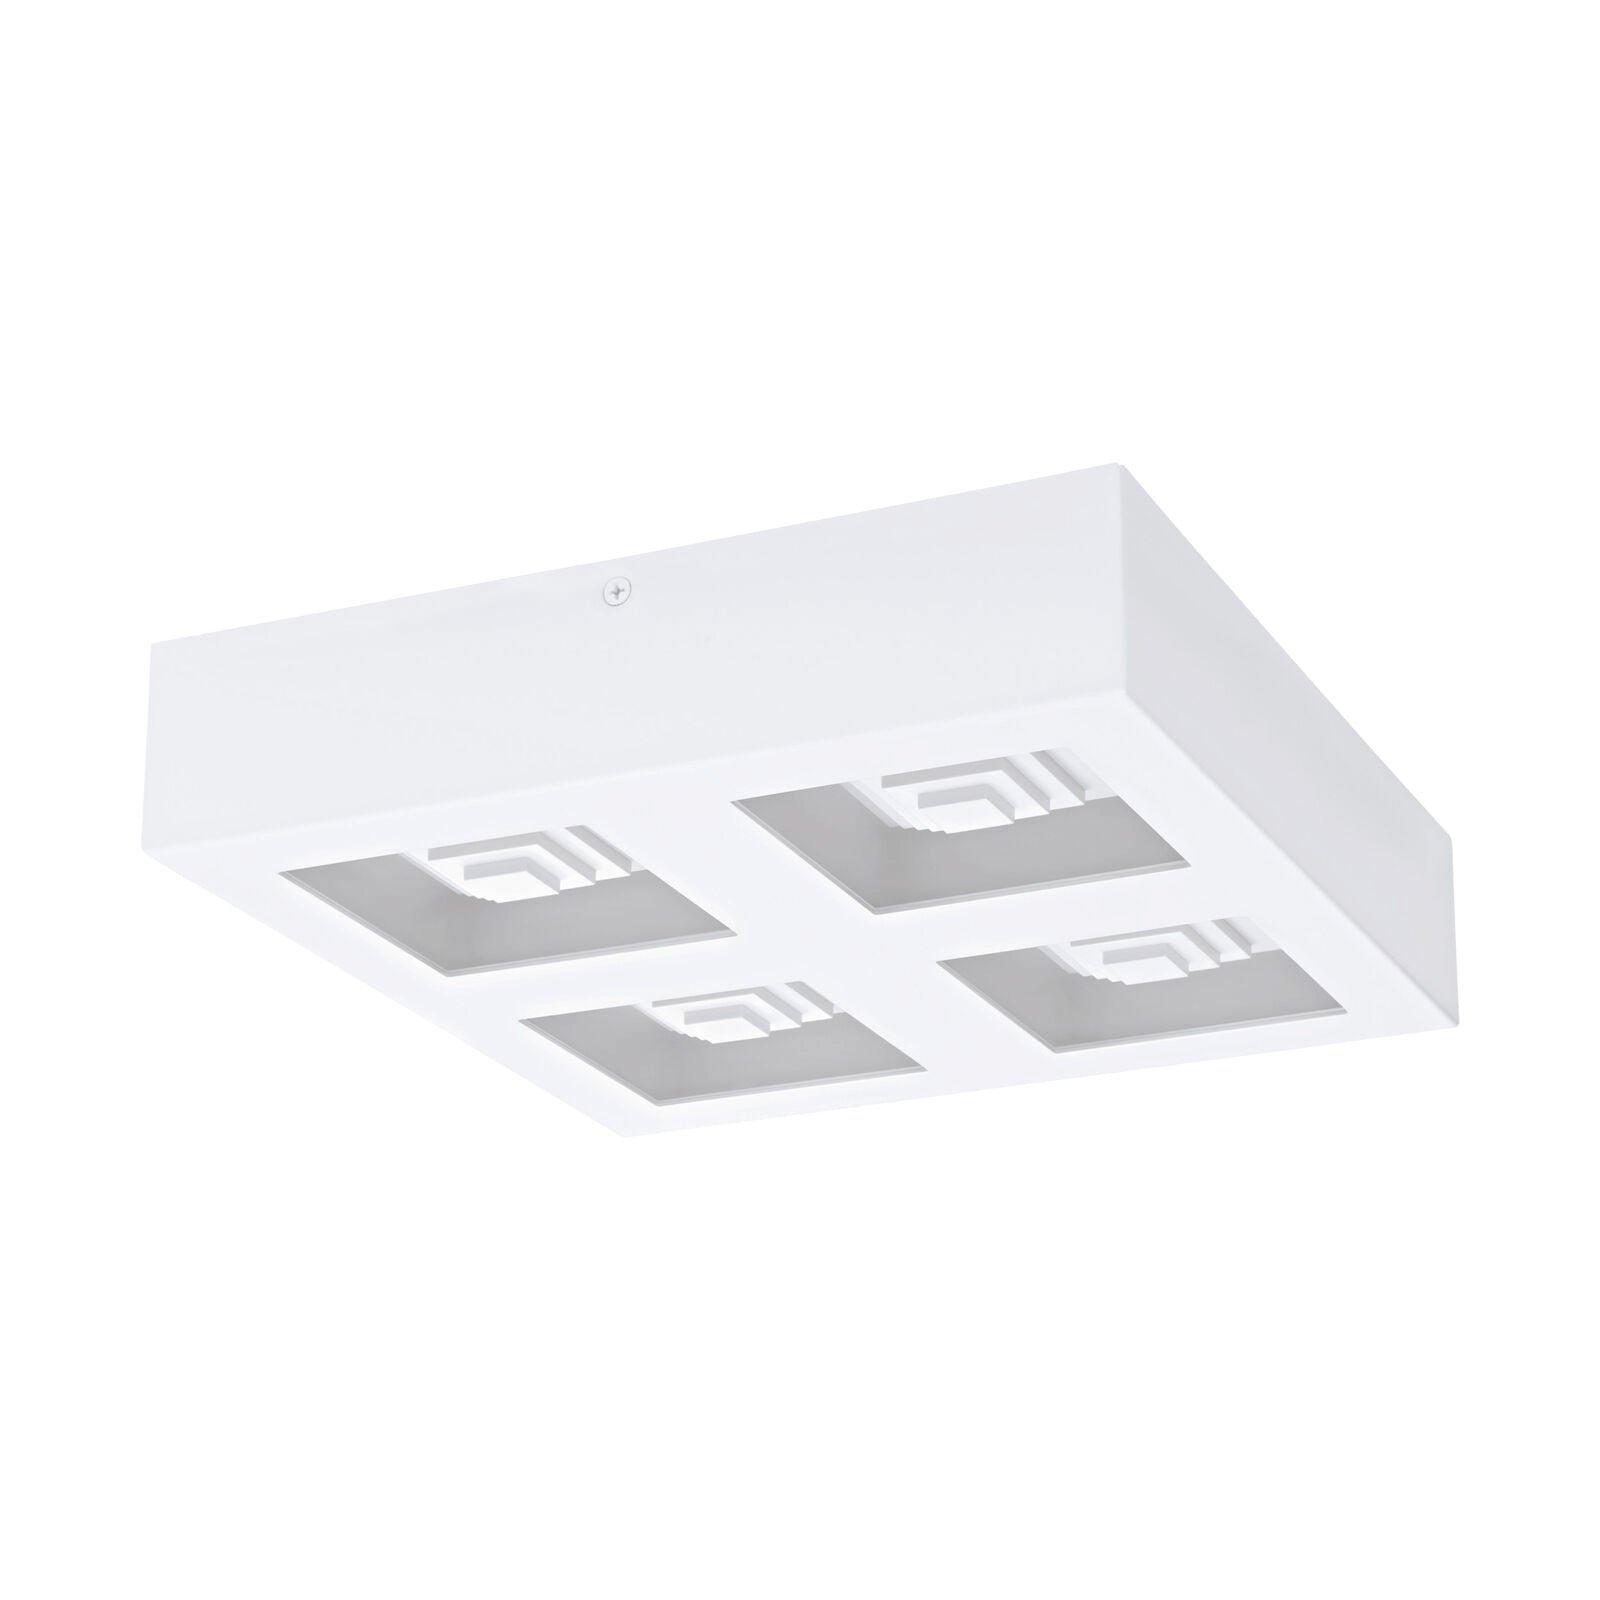 Wall / Ceiling Light Modern White Box Lamp 270mm x 270mm 6.3W Built in LED